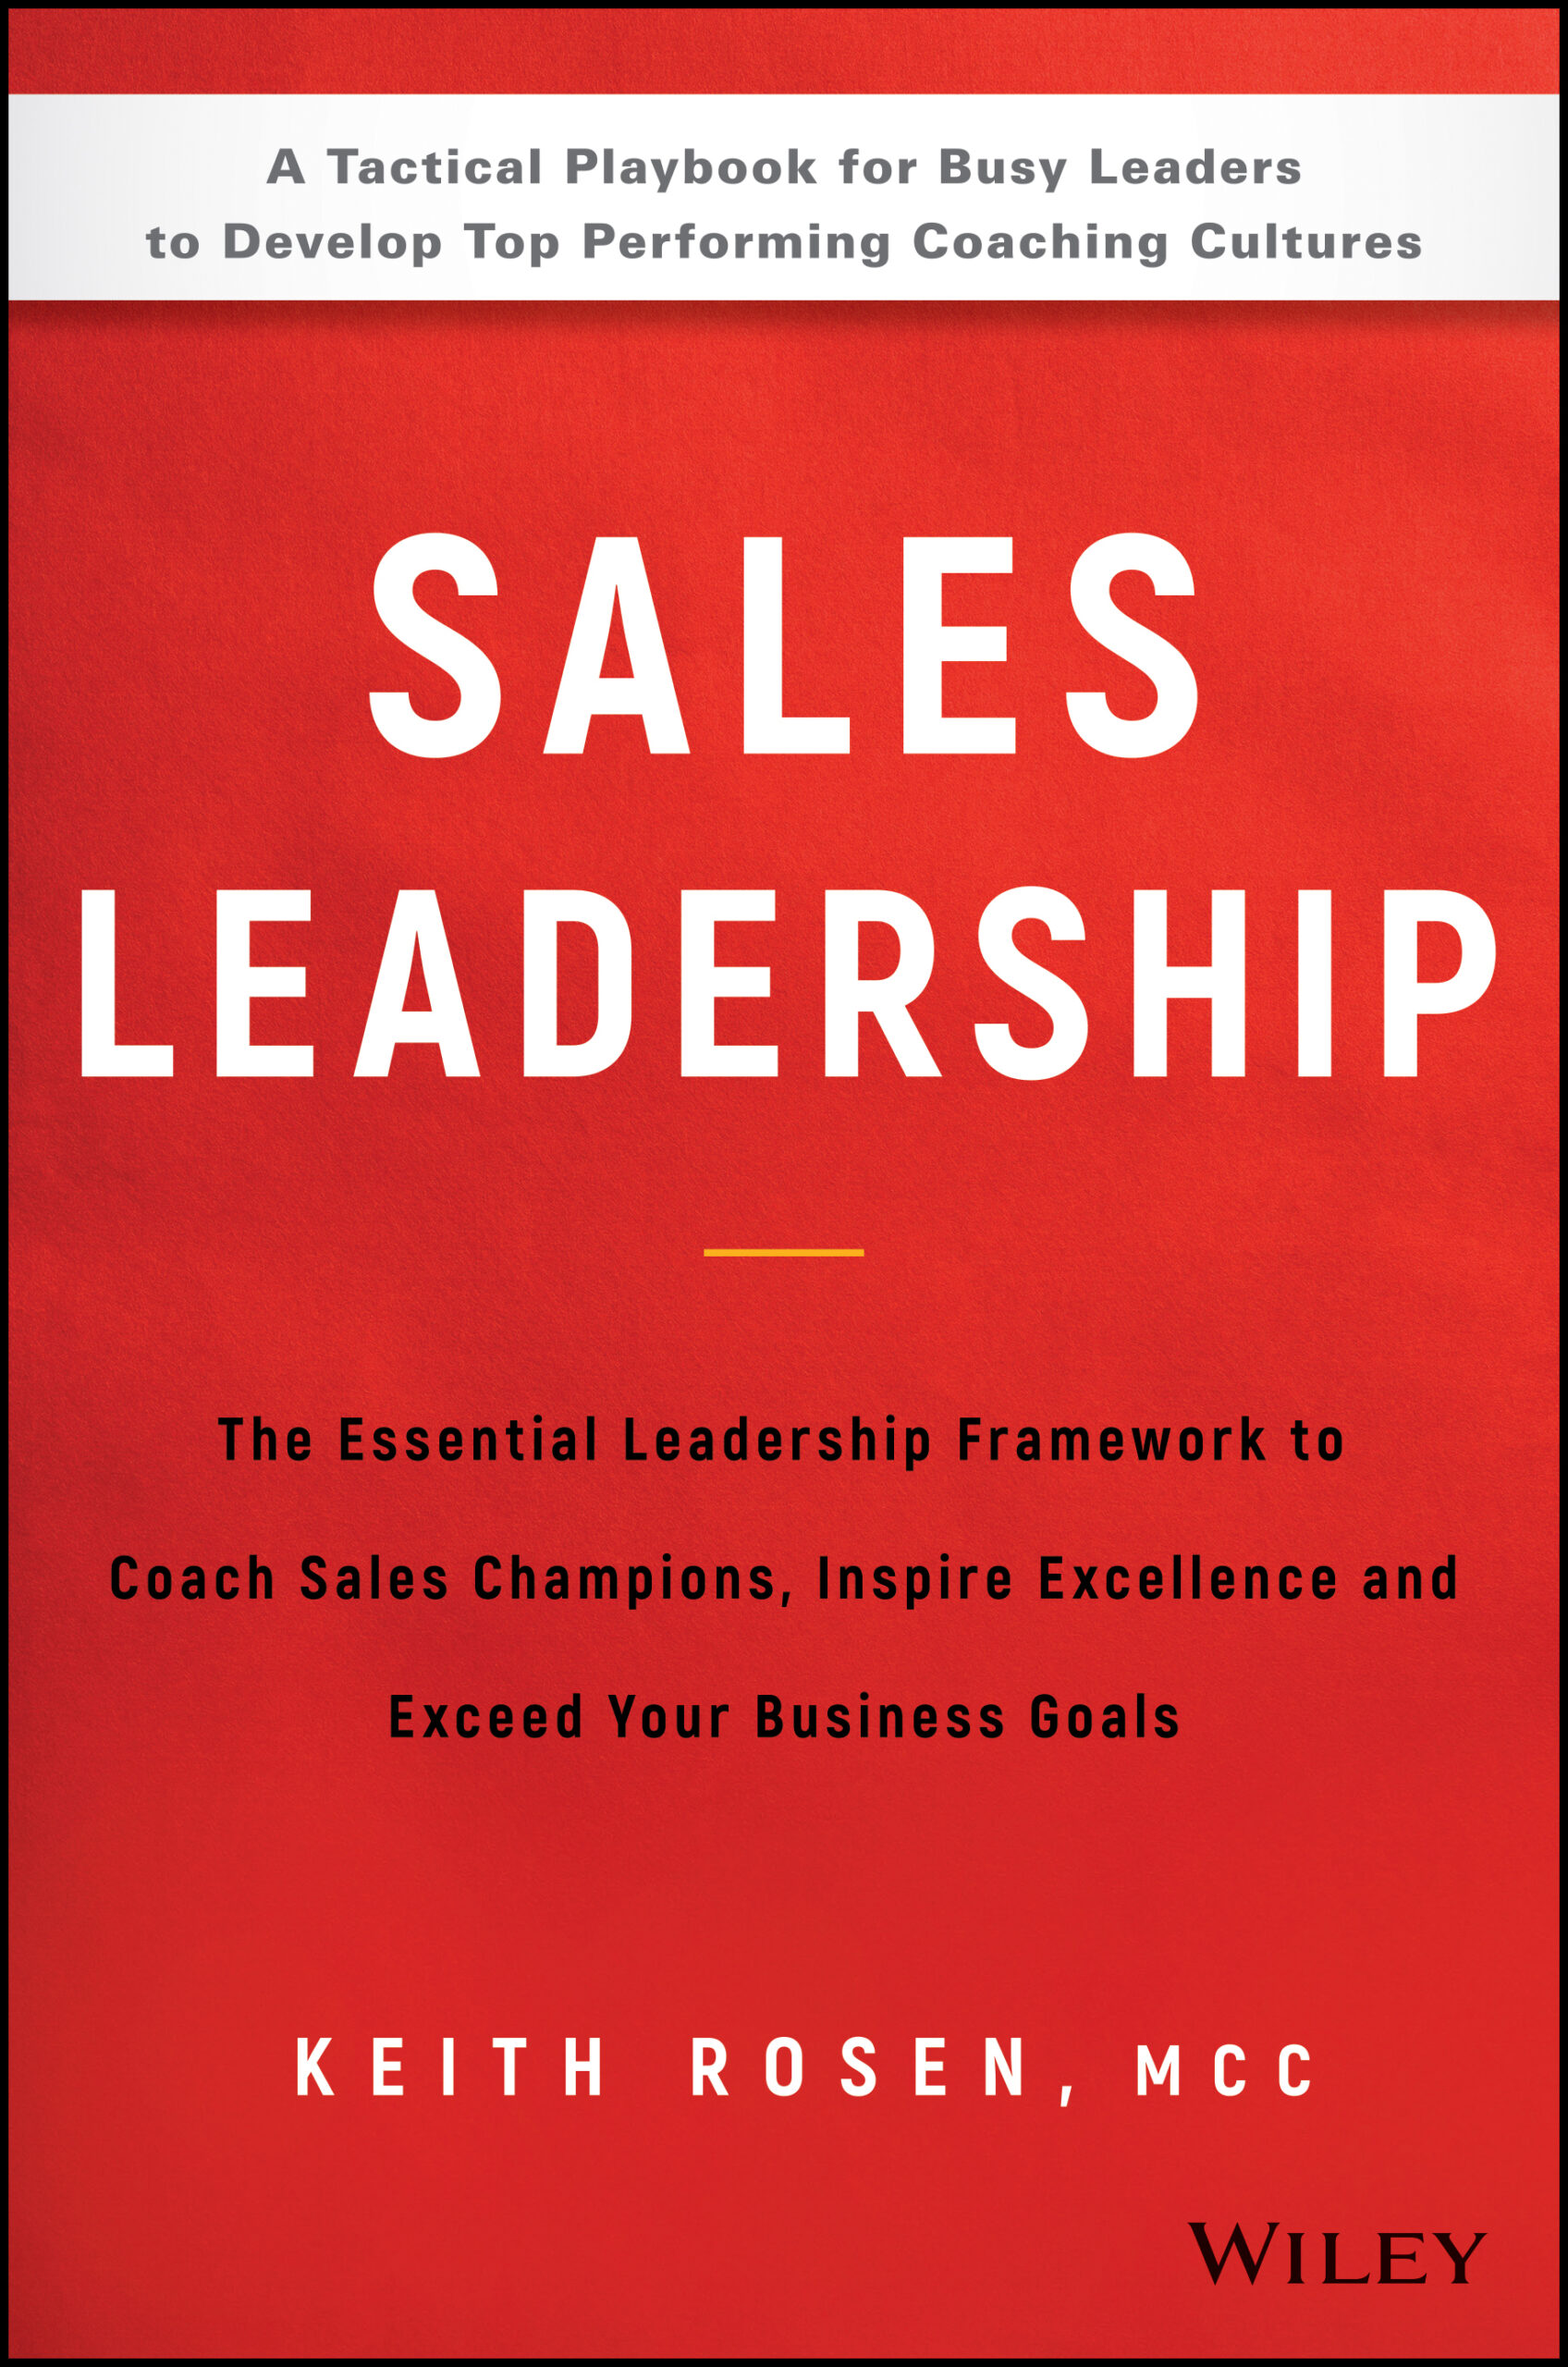 Good Stuff – Sales Leadership